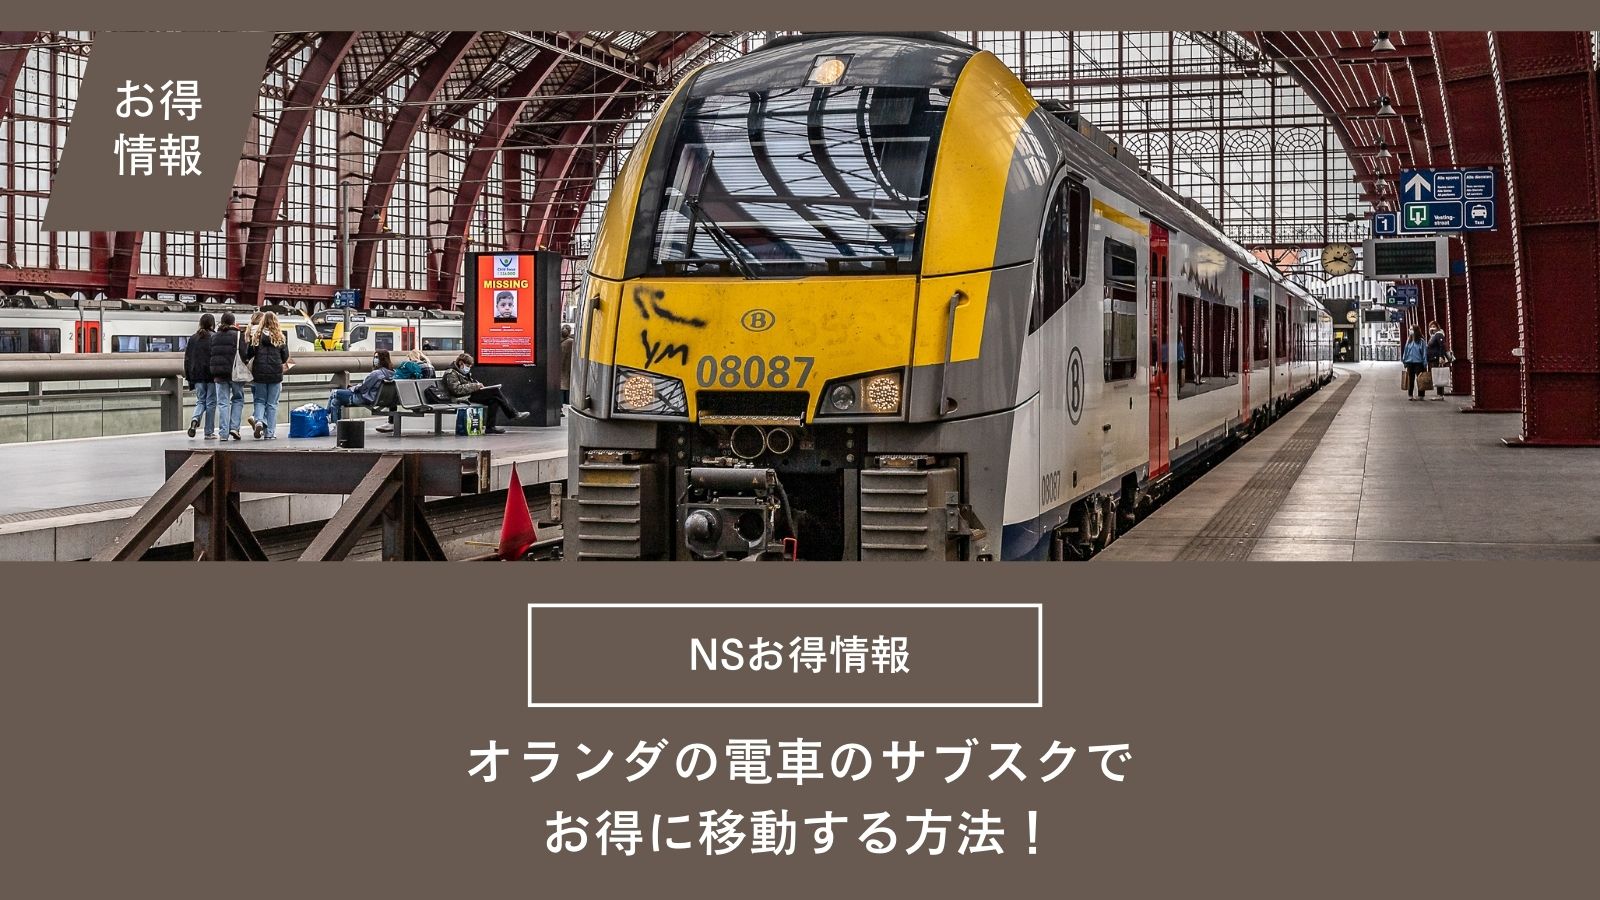 【オランダの電車料金をお得にする方法】乗り放題やサブスクを徹底解説